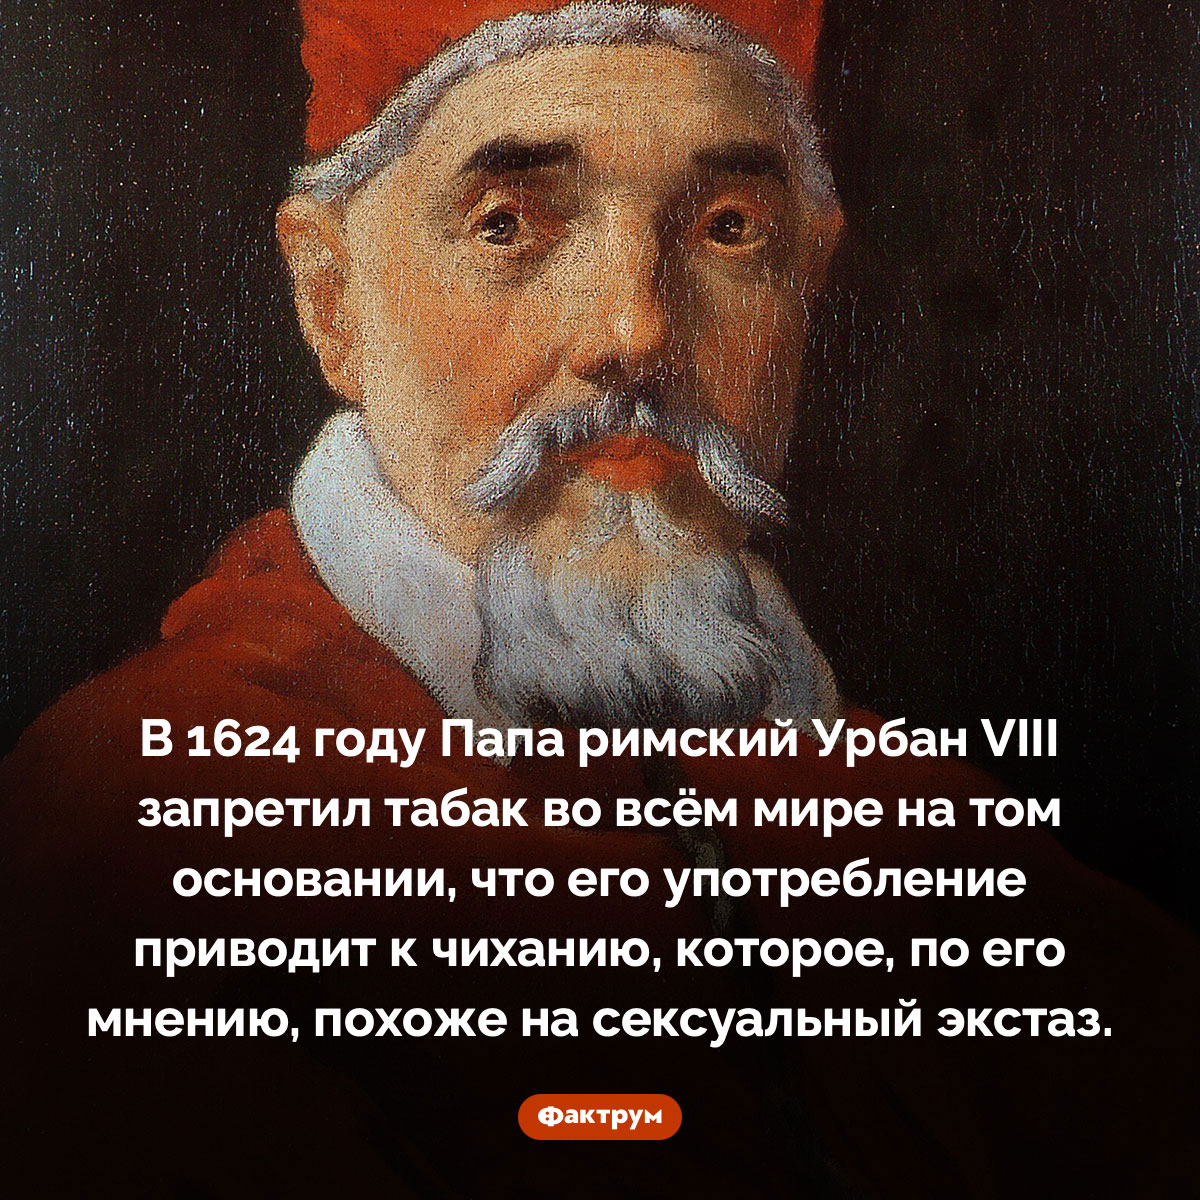 Папа римский Урбан VIII в 1624 году запретил табак во всём мире. В 1624 году Папа римский Урбан VIII запретил табак во всём мире на том основании, что его употребление приводит к чиханию, которое, по его мнению, похоже на сексуальный экстаз.